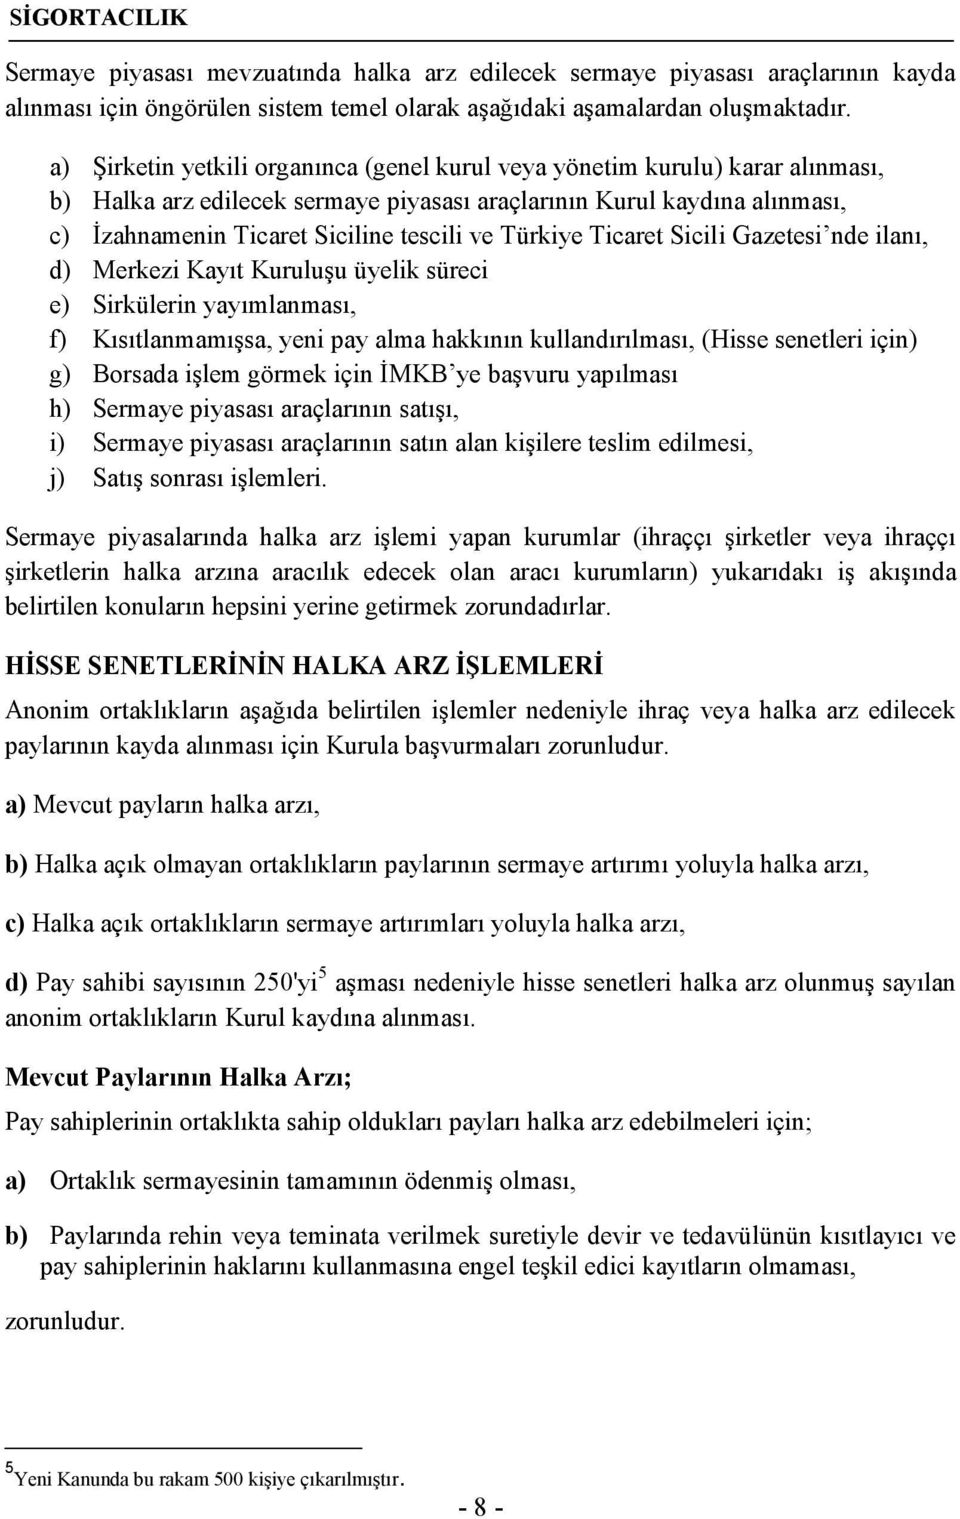 Türkiye Ticaret Sicili Gazetesi nde ilanı, d) Merkezi Kayıt Kuruluşu üyelik süreci e) Sirkülerin yayımlanması, f) Kısıtlanmamışsa, yeni pay alma hakkının kullandırılması, (Hisse senetleri için) g)